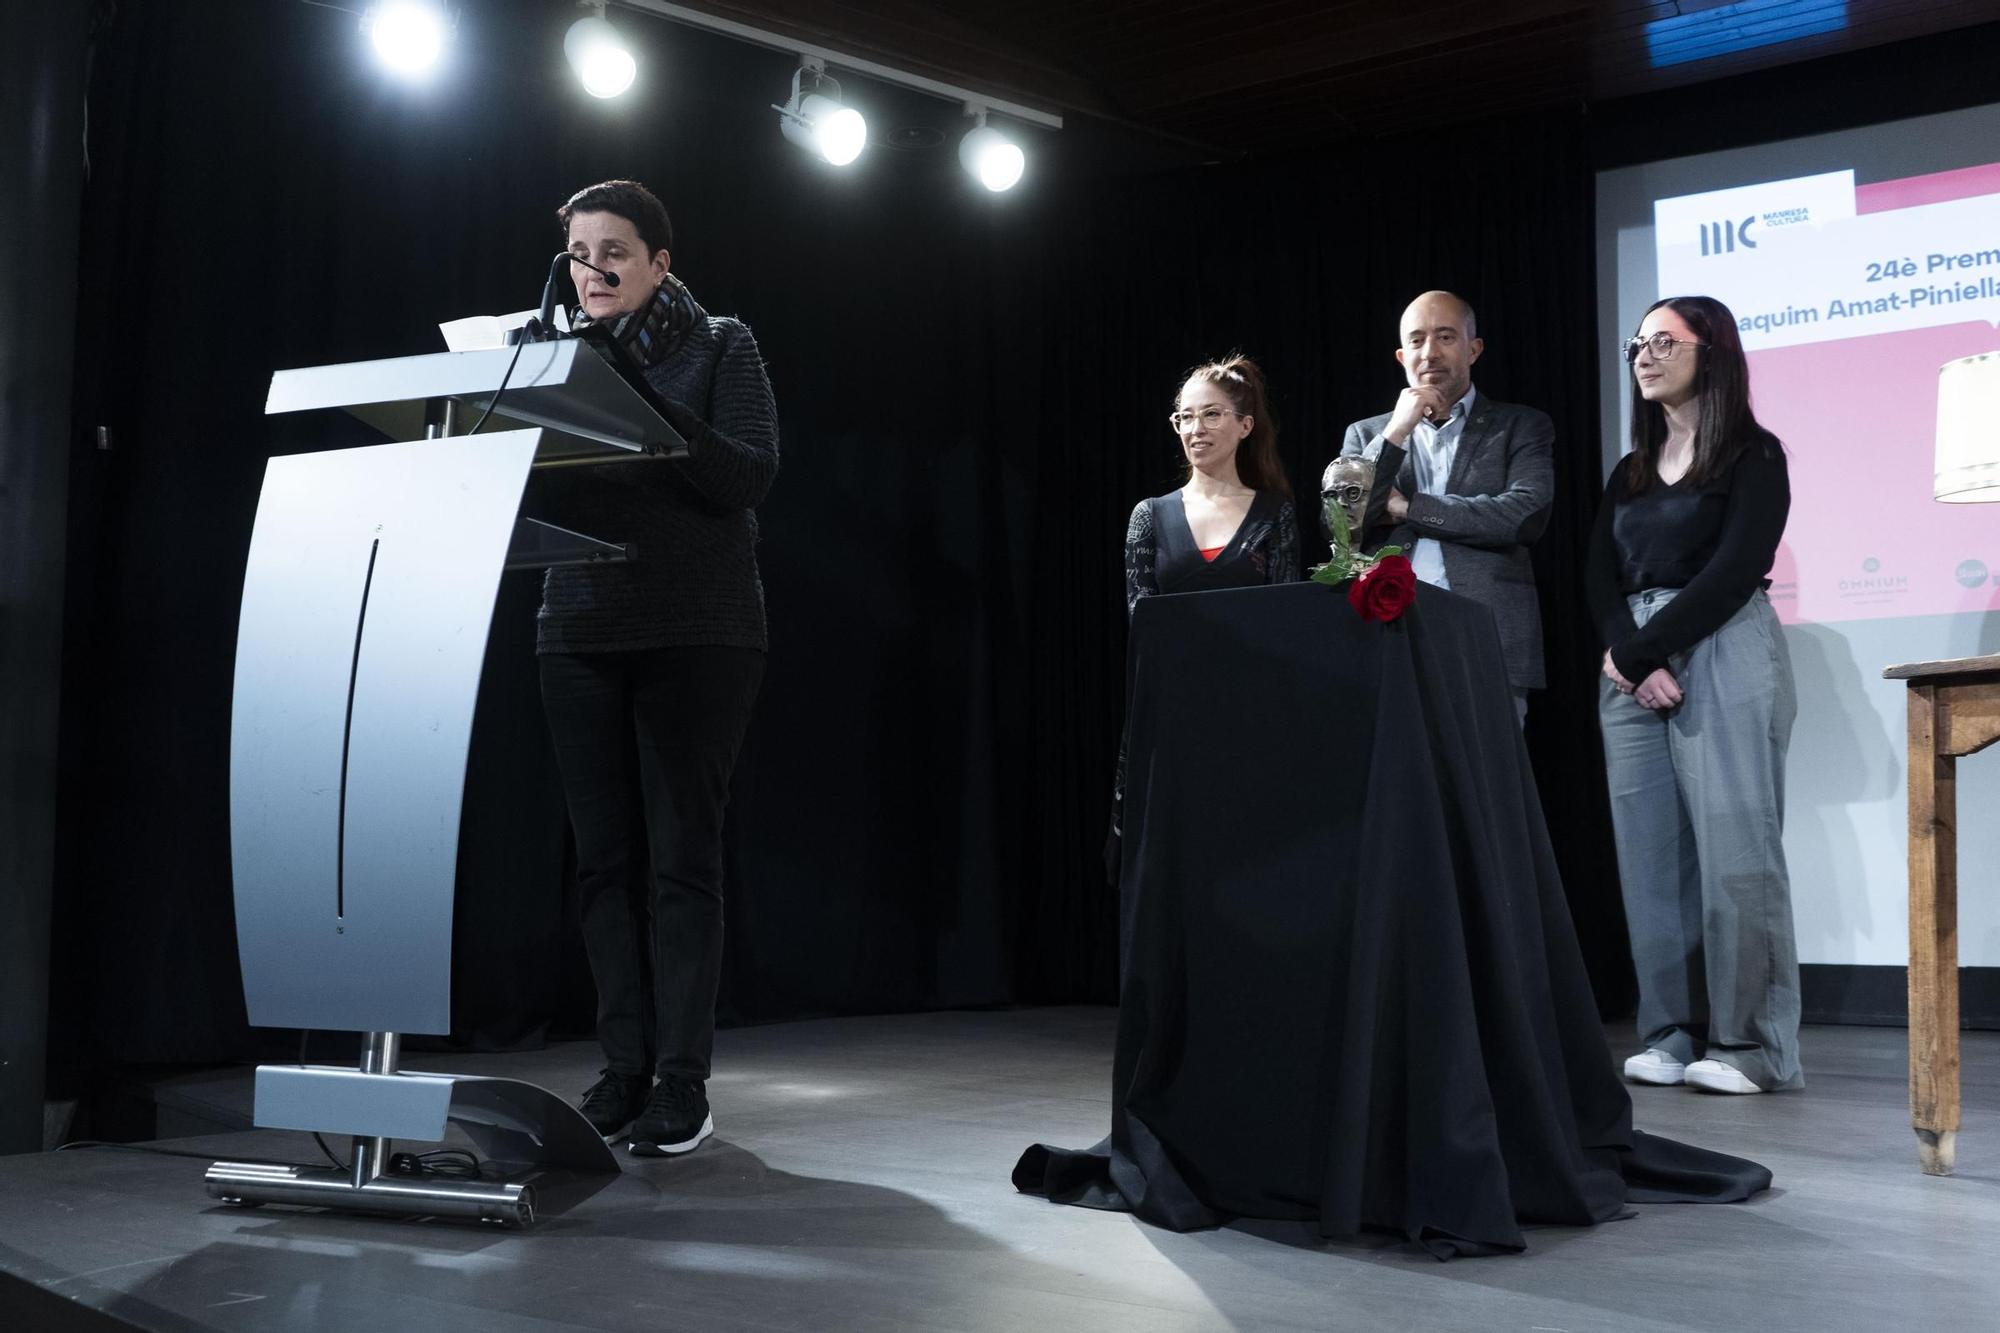 Les millors imatges del lliurament del 24è Premi Amat-Piniella